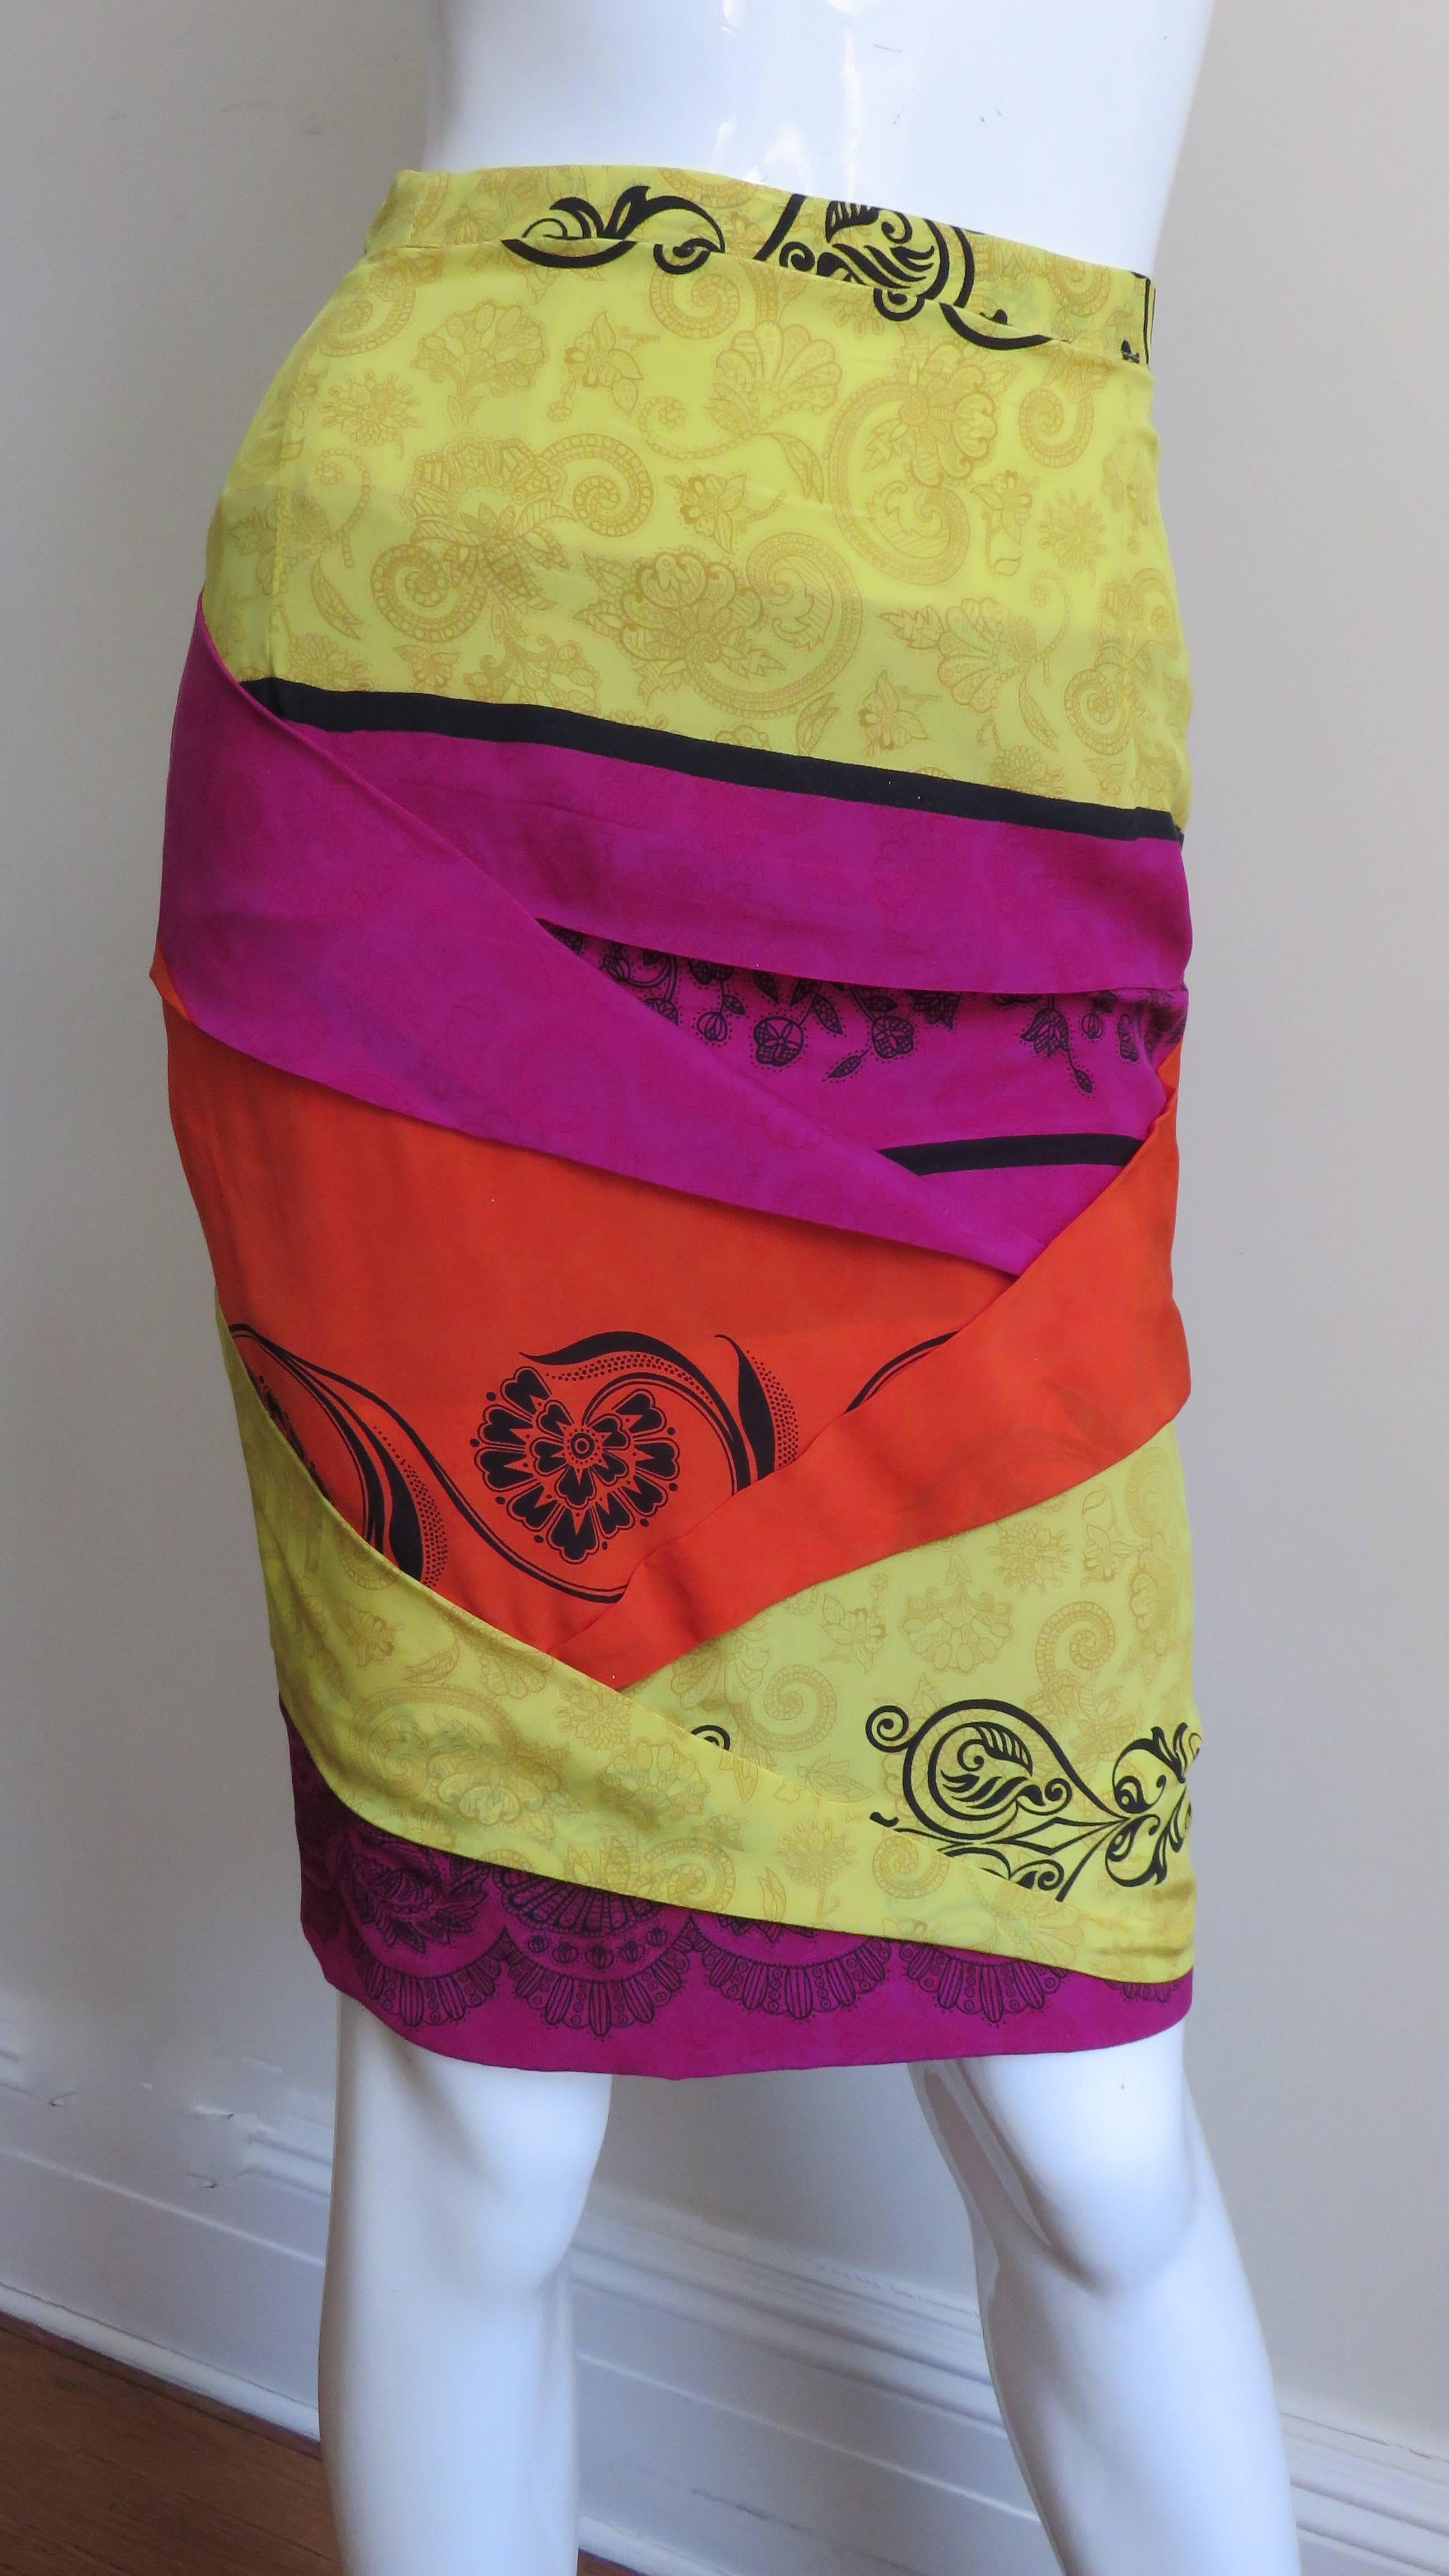 Une fabuleuse jupe en soie de Gianni Versace en soie jaune, orange et rose vif accentuée d'un imprimé abstrait noir.  La jupe, à l'avant et à l'arrière, présente des plis angulaires qui se chevauchent. Il a une fermeture éclair sur le côté, un